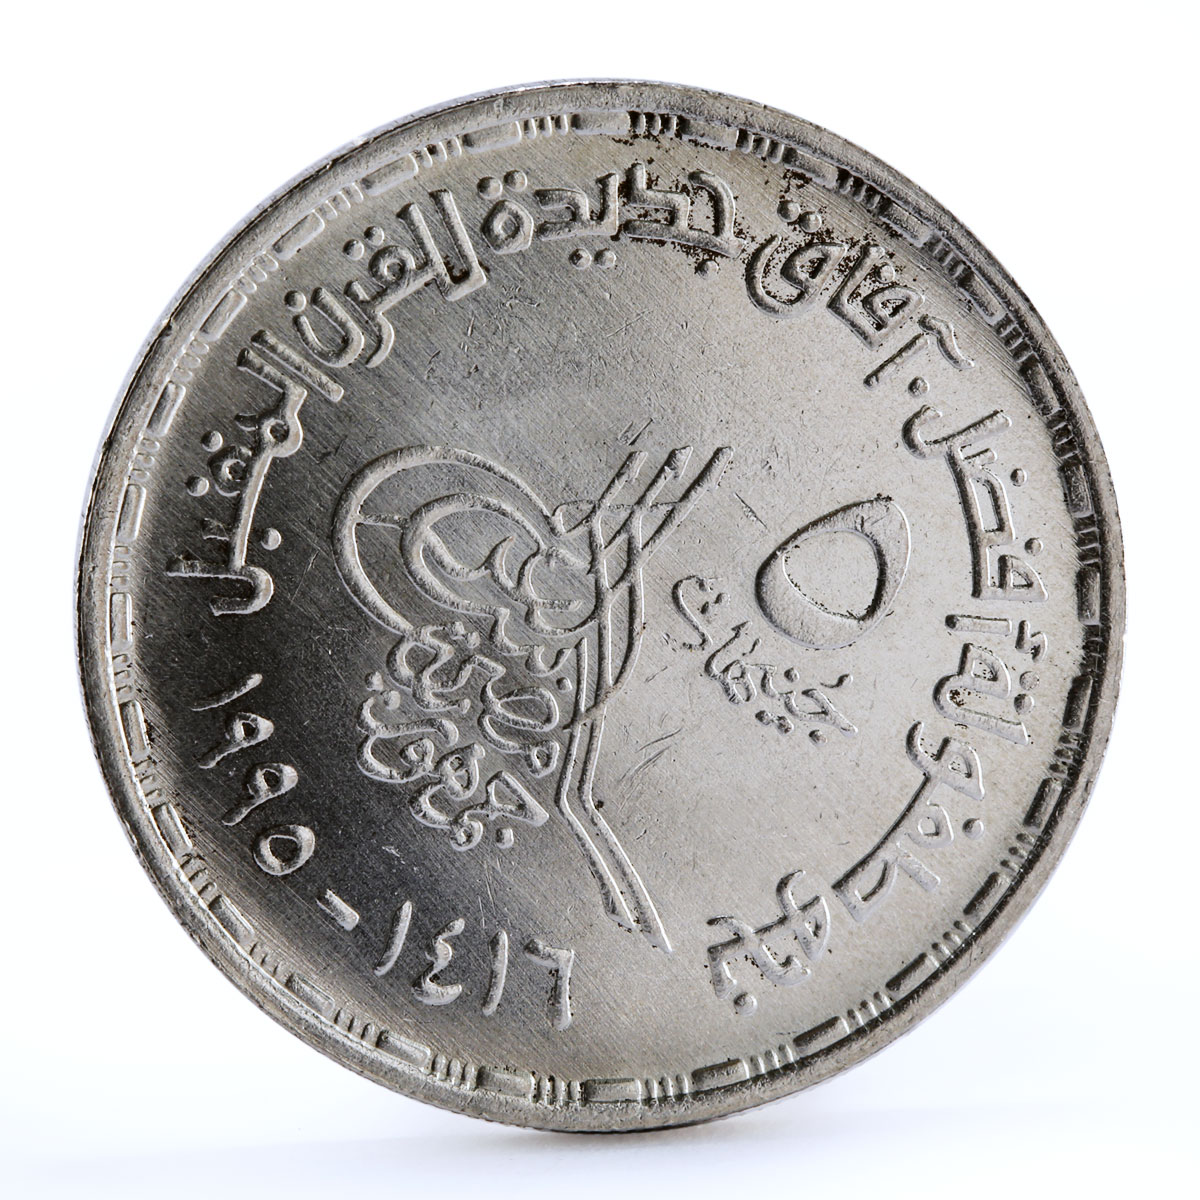 Egypt 5 pounds International Pediatrics Congress Children silver coin 1995